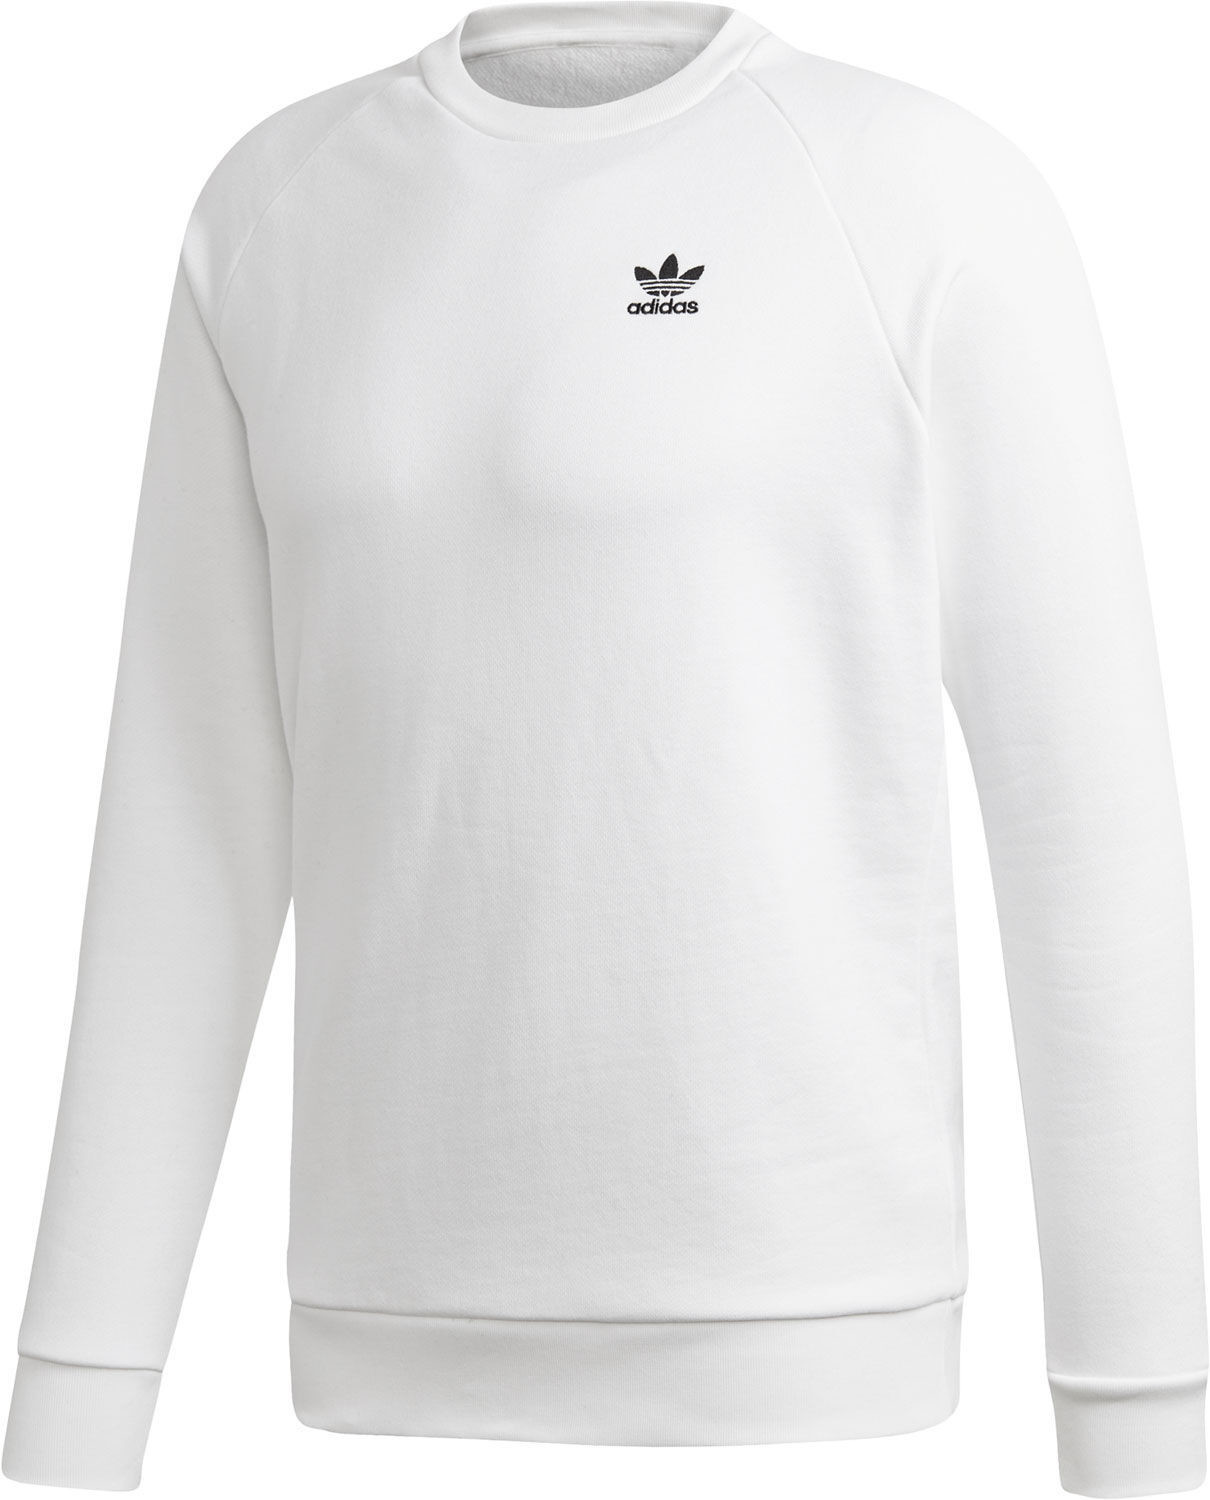 Adidas Essential Sweatshirt white/black